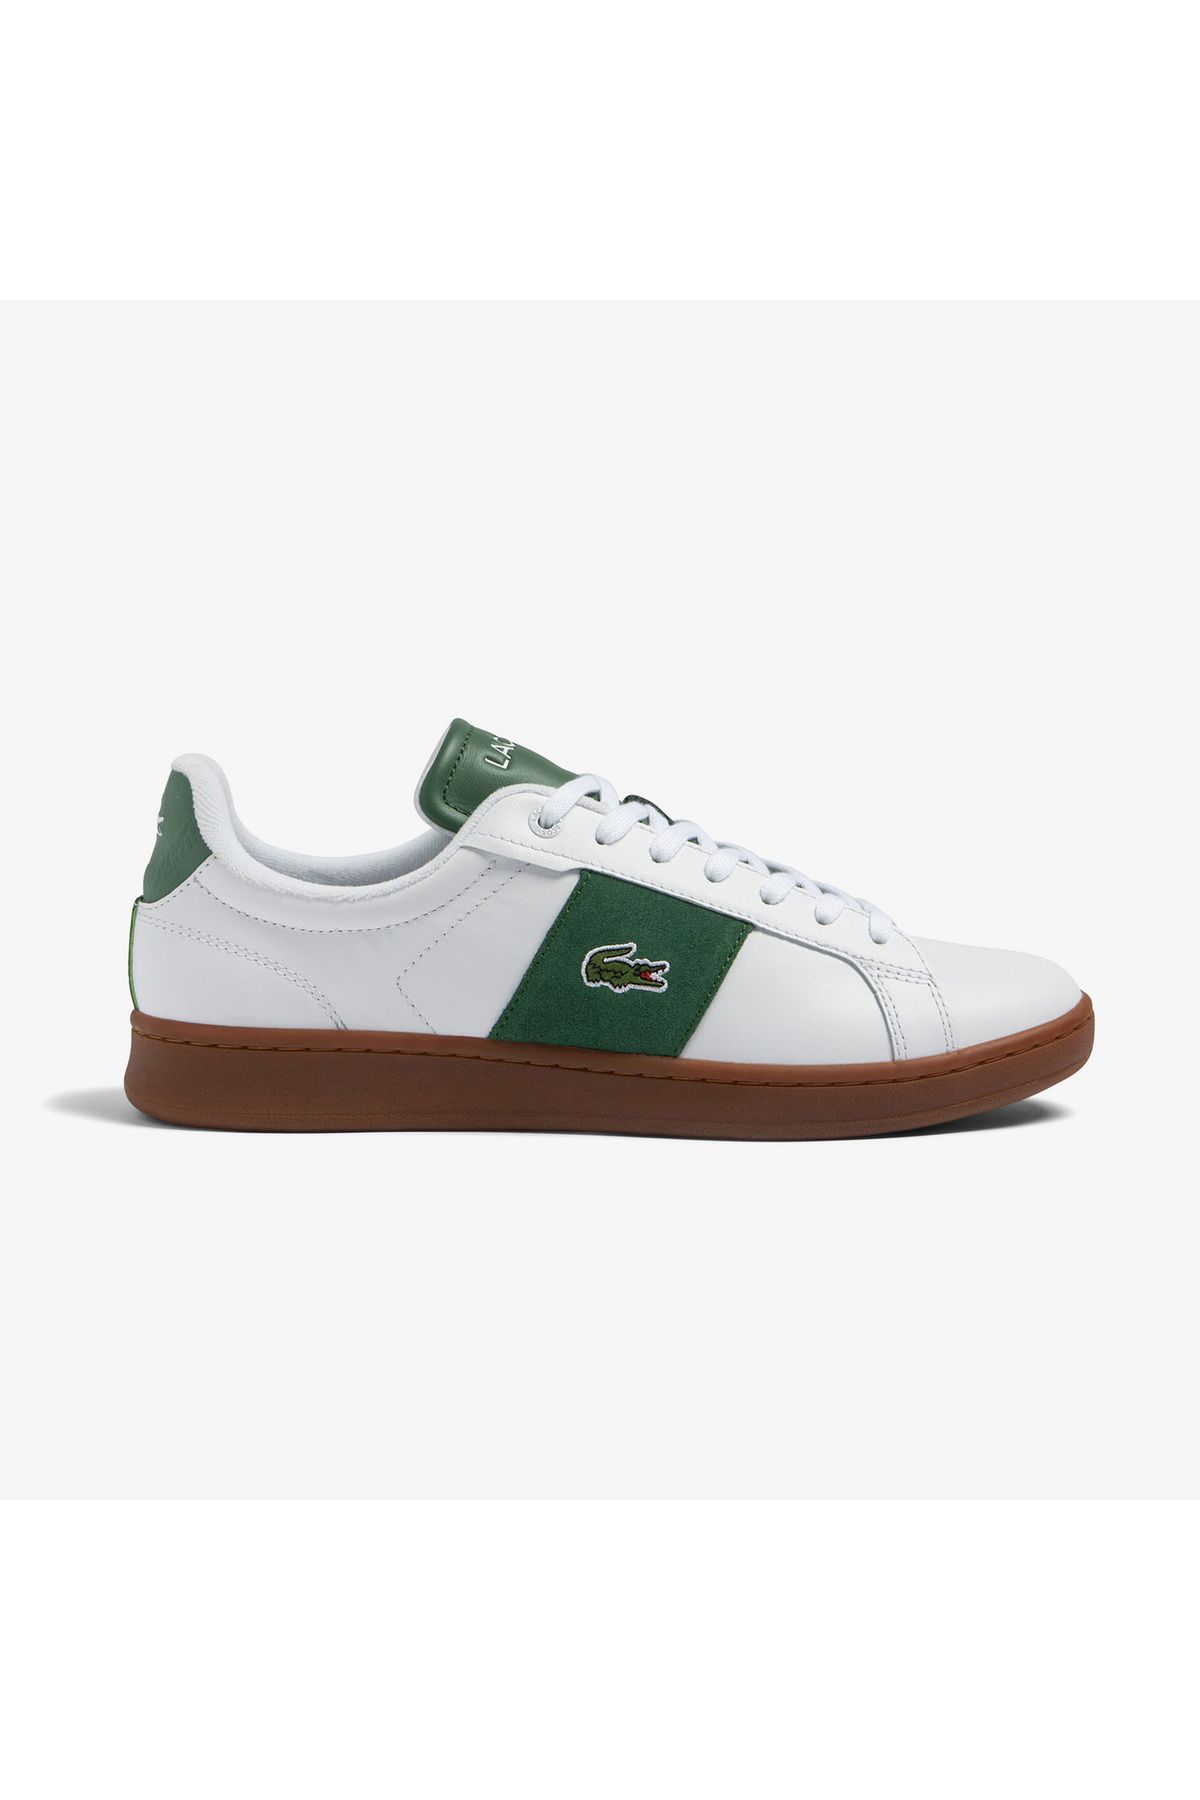 Lacoste Carnaby Pro Erkek Beyaz Sneaker